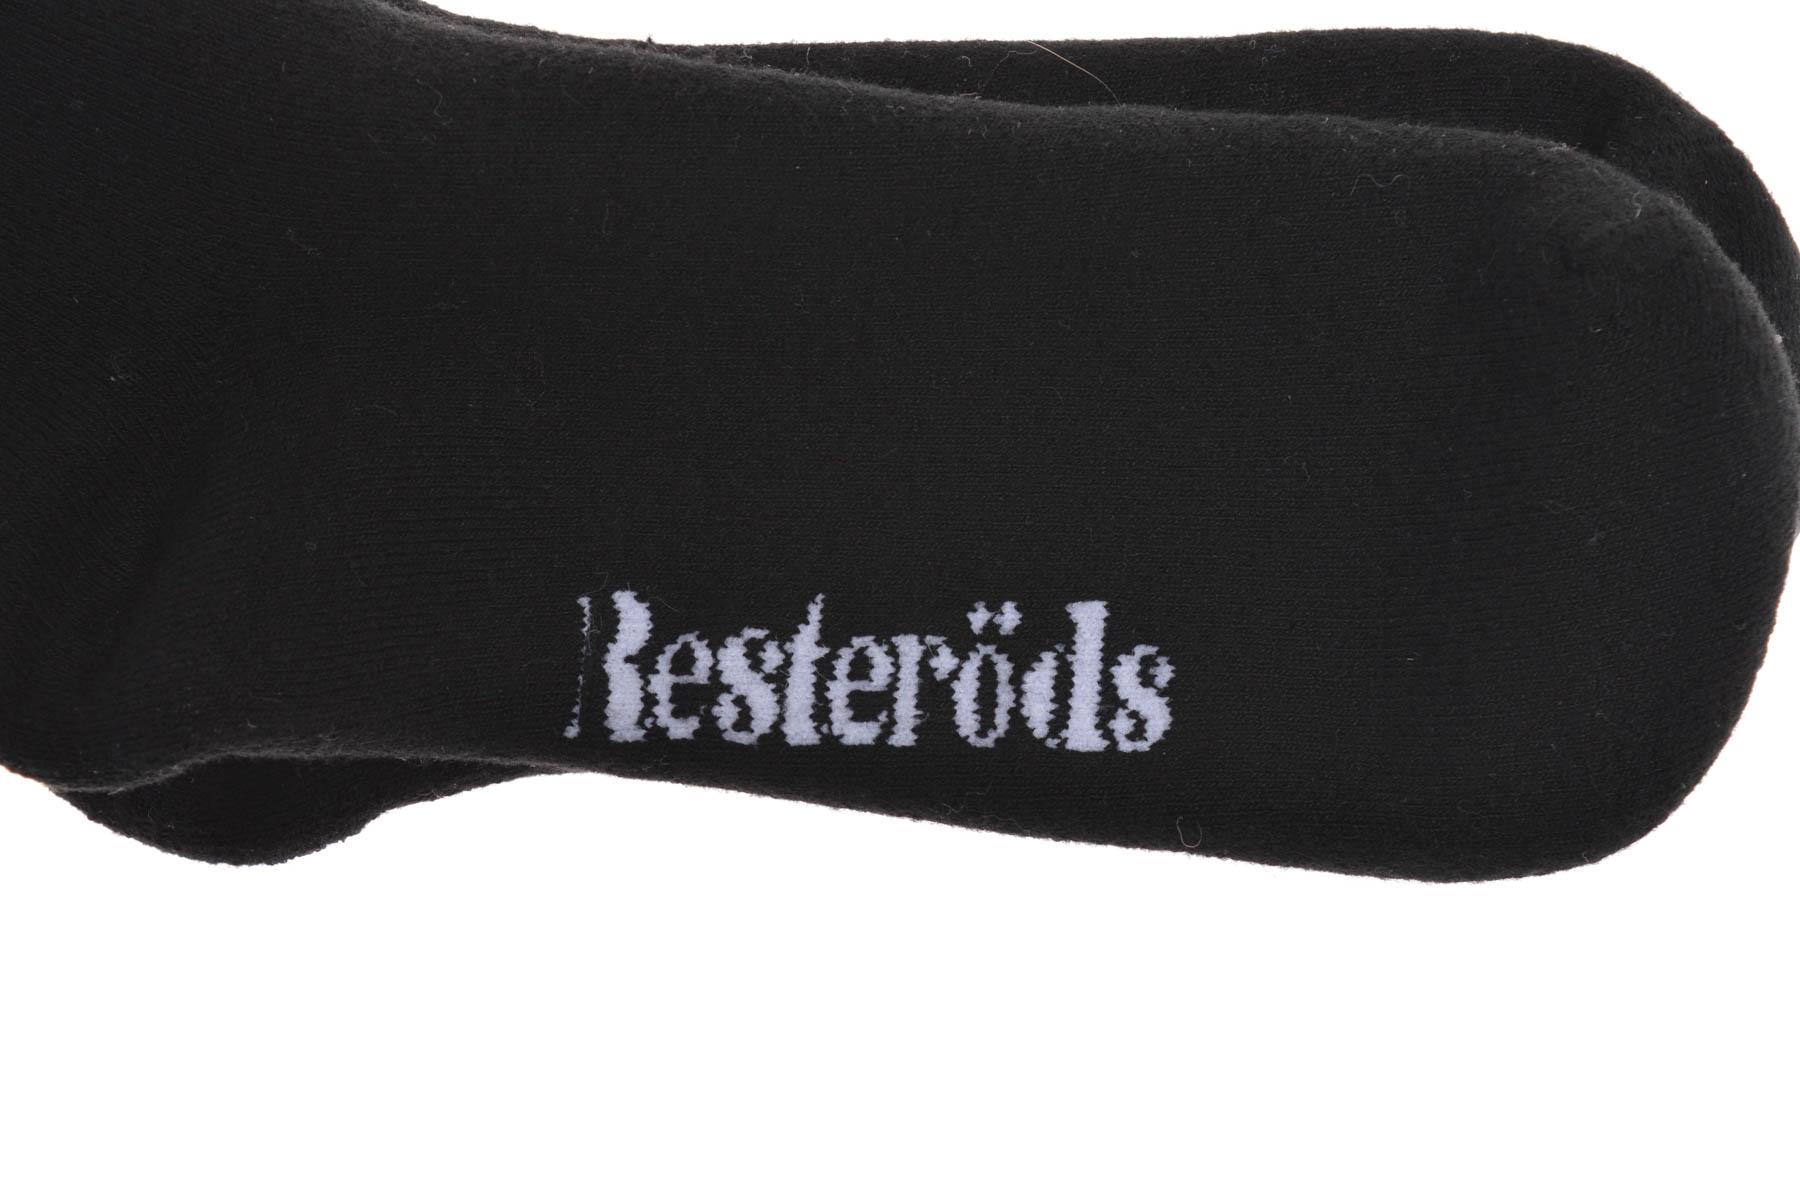 Дамски чорапи - Resterods - 1